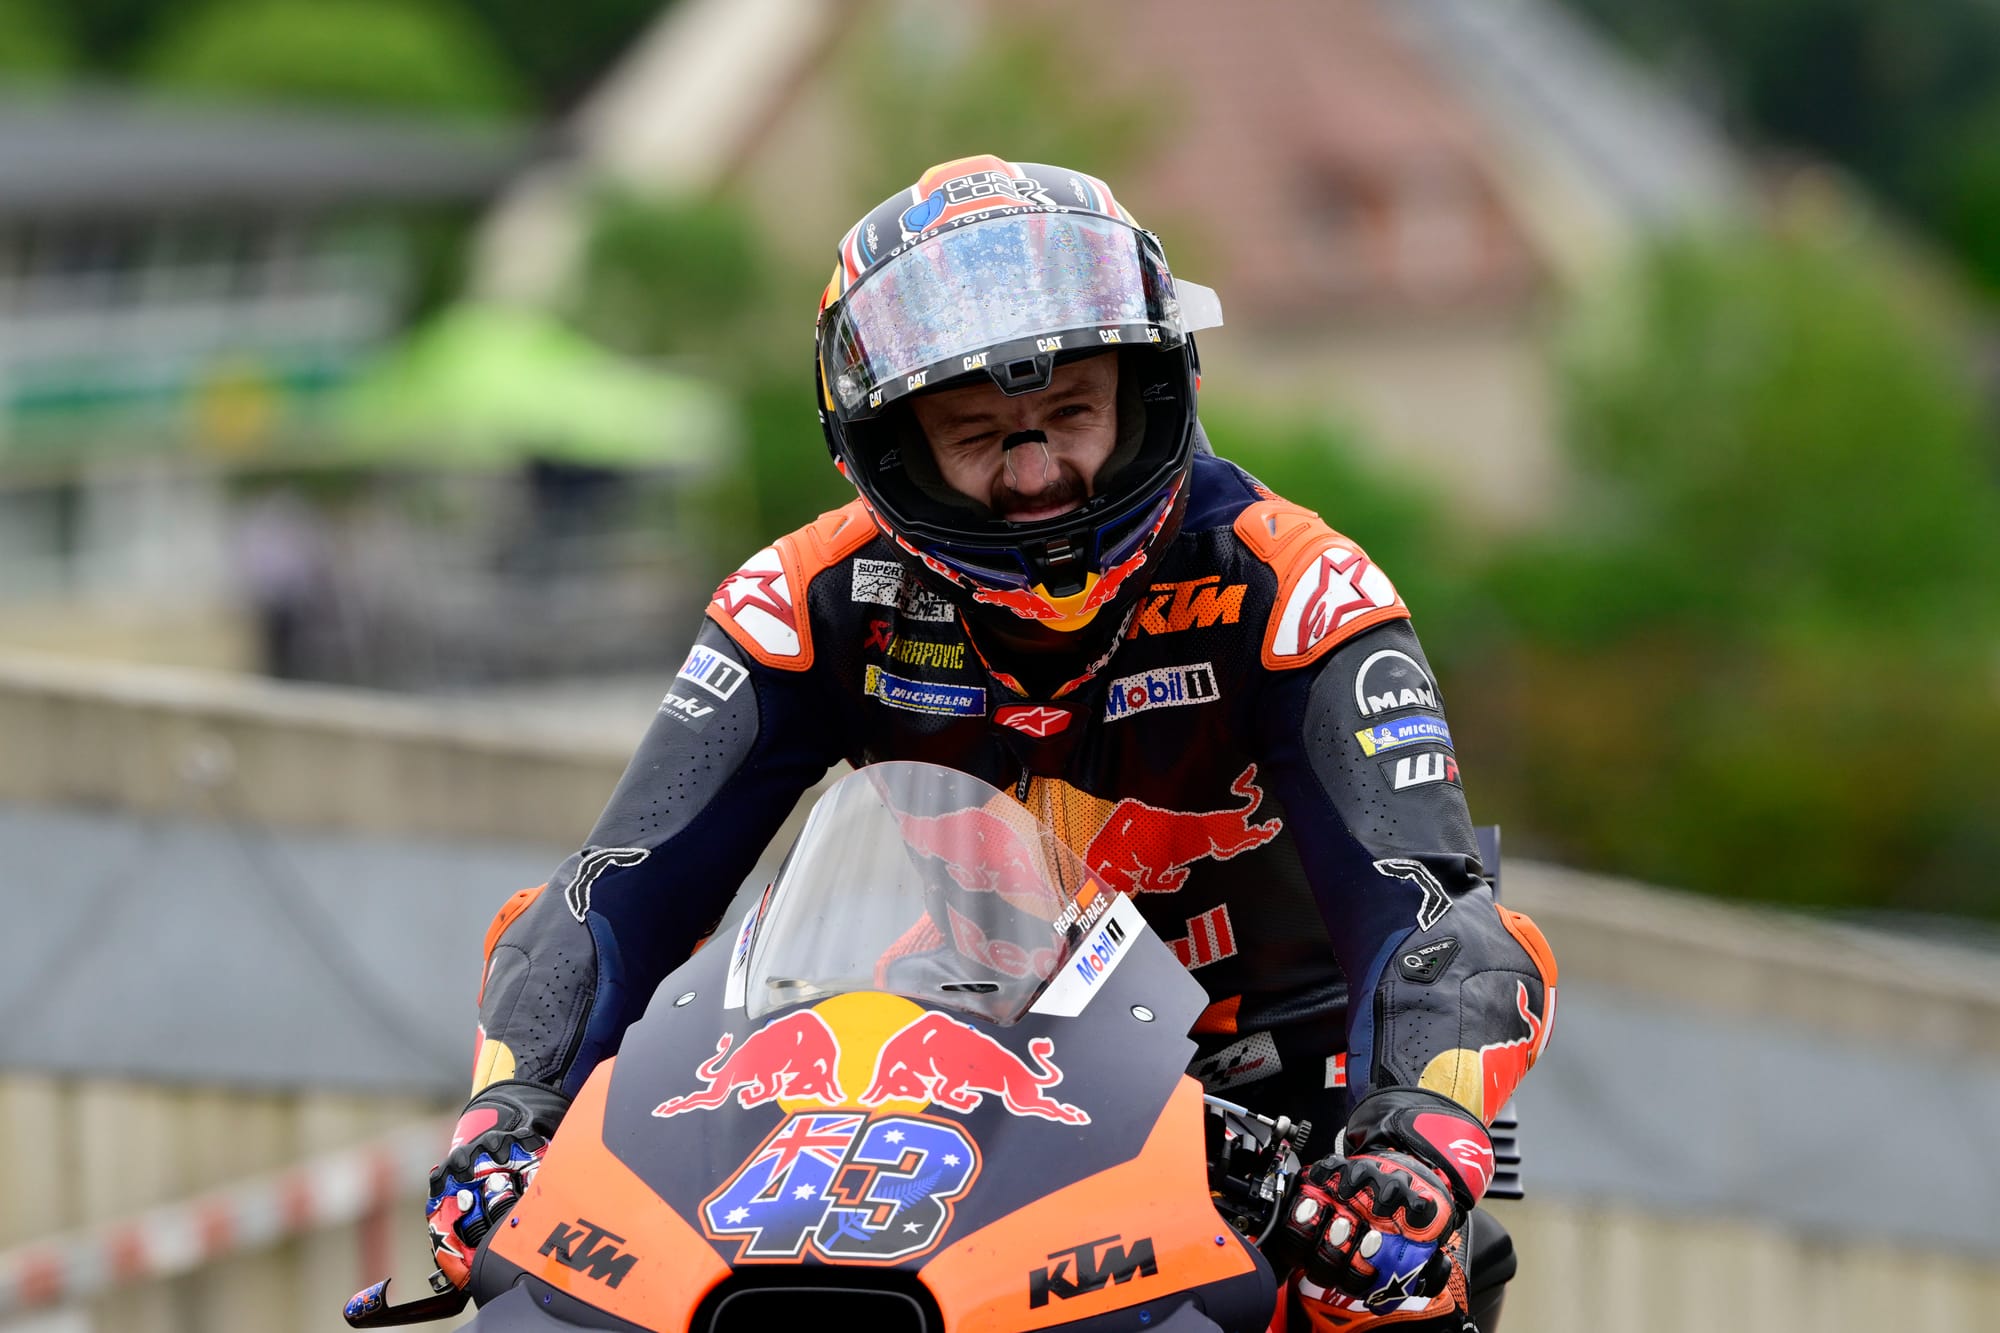 GnG 1150492 HiRes El heroísmo de Acosta no oculta la preocupante debilidad de KTM en MotoGP